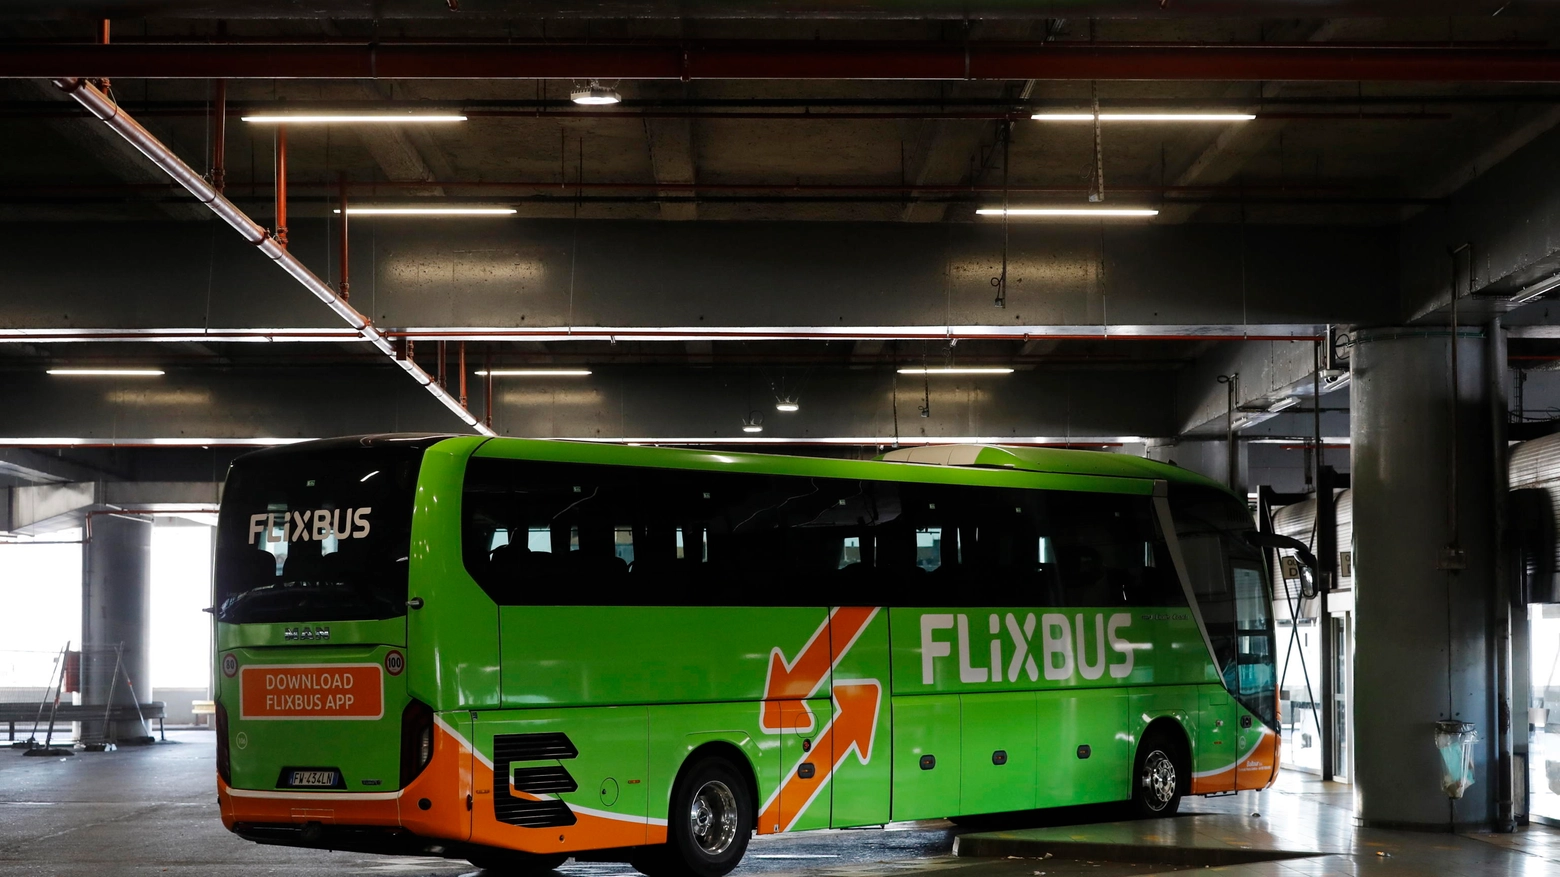 L'autobus FlixBus proveniente da Milano